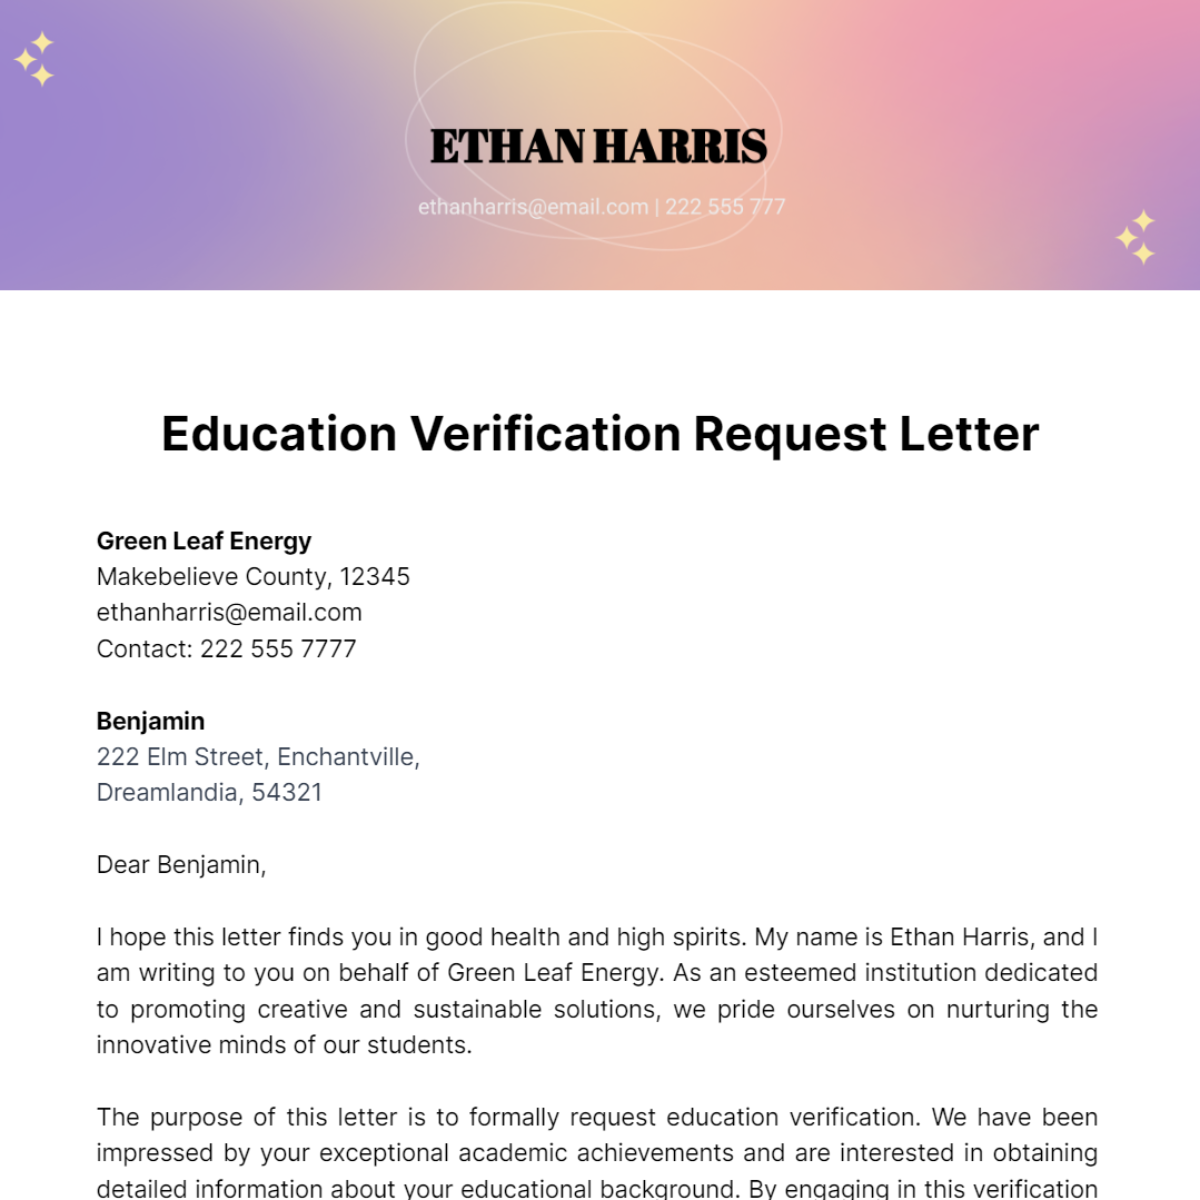 Education Verification Request Letter Template